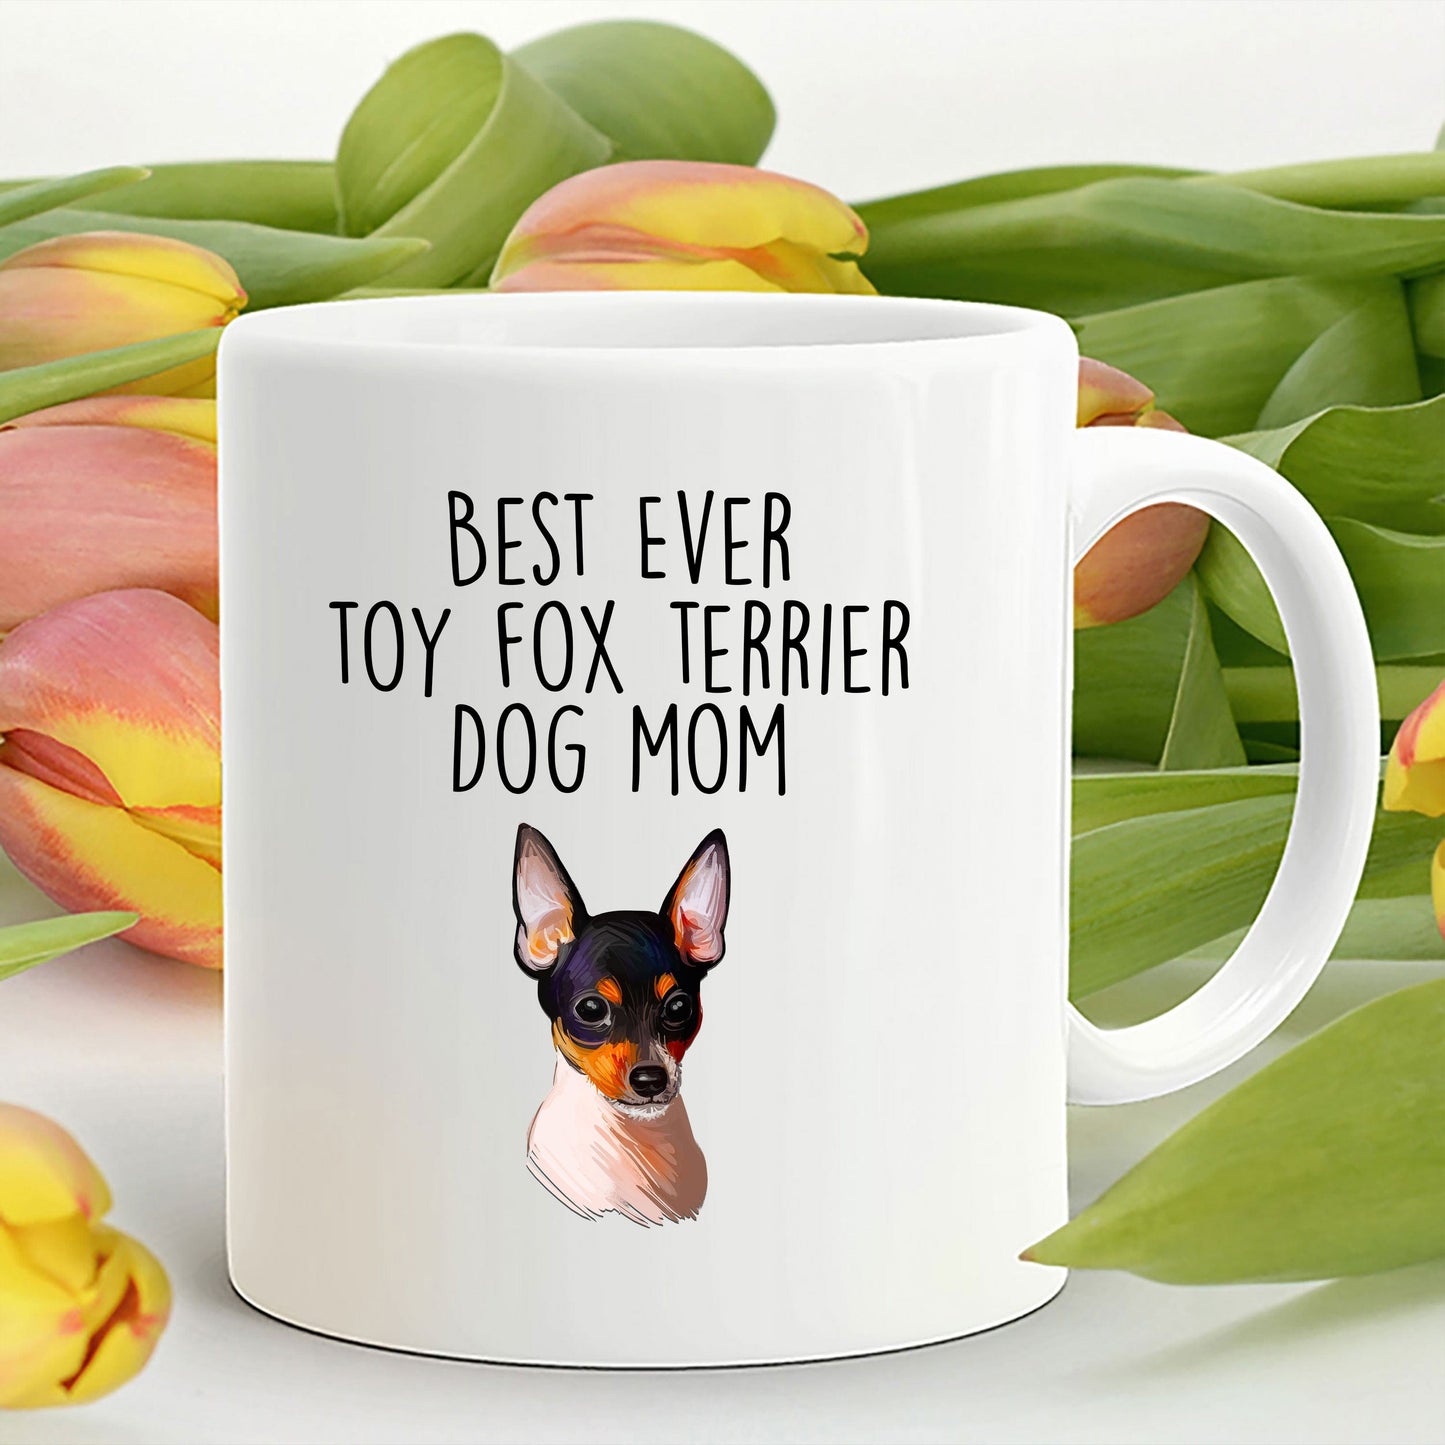 Toy Fox Terrier Dog Mom Coffee Mug